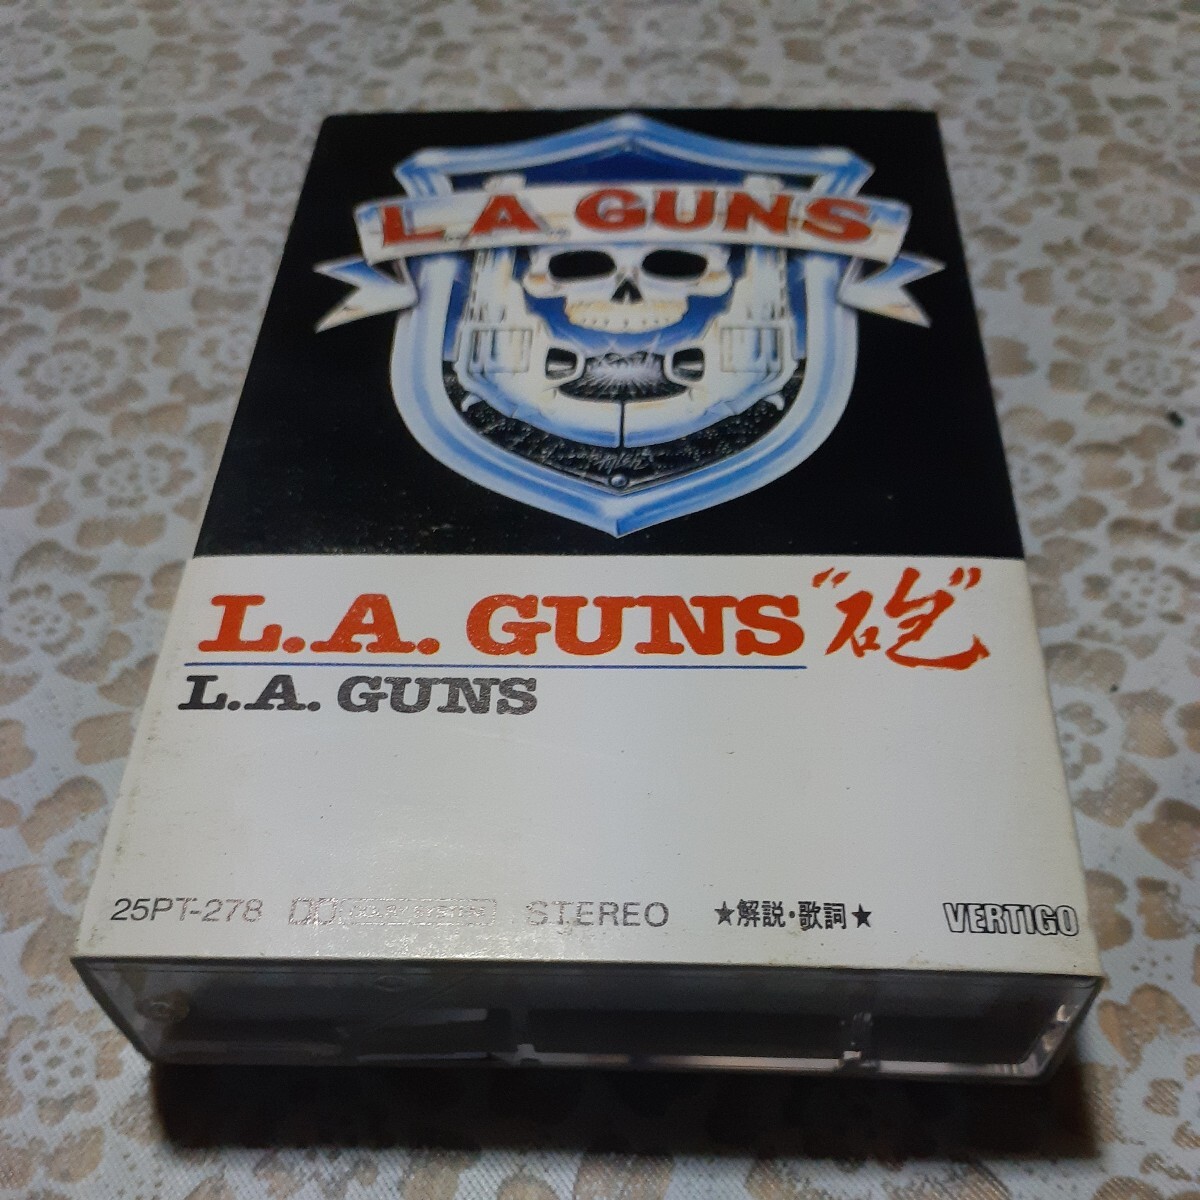 LA GUNS. cassette tape 